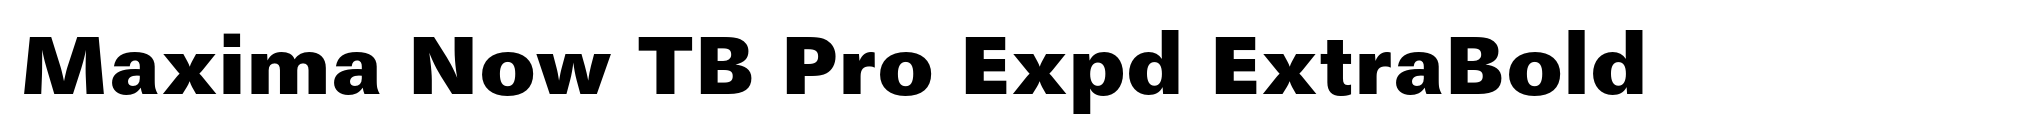 Maxima Now TB Pro Expd ExtraBold image